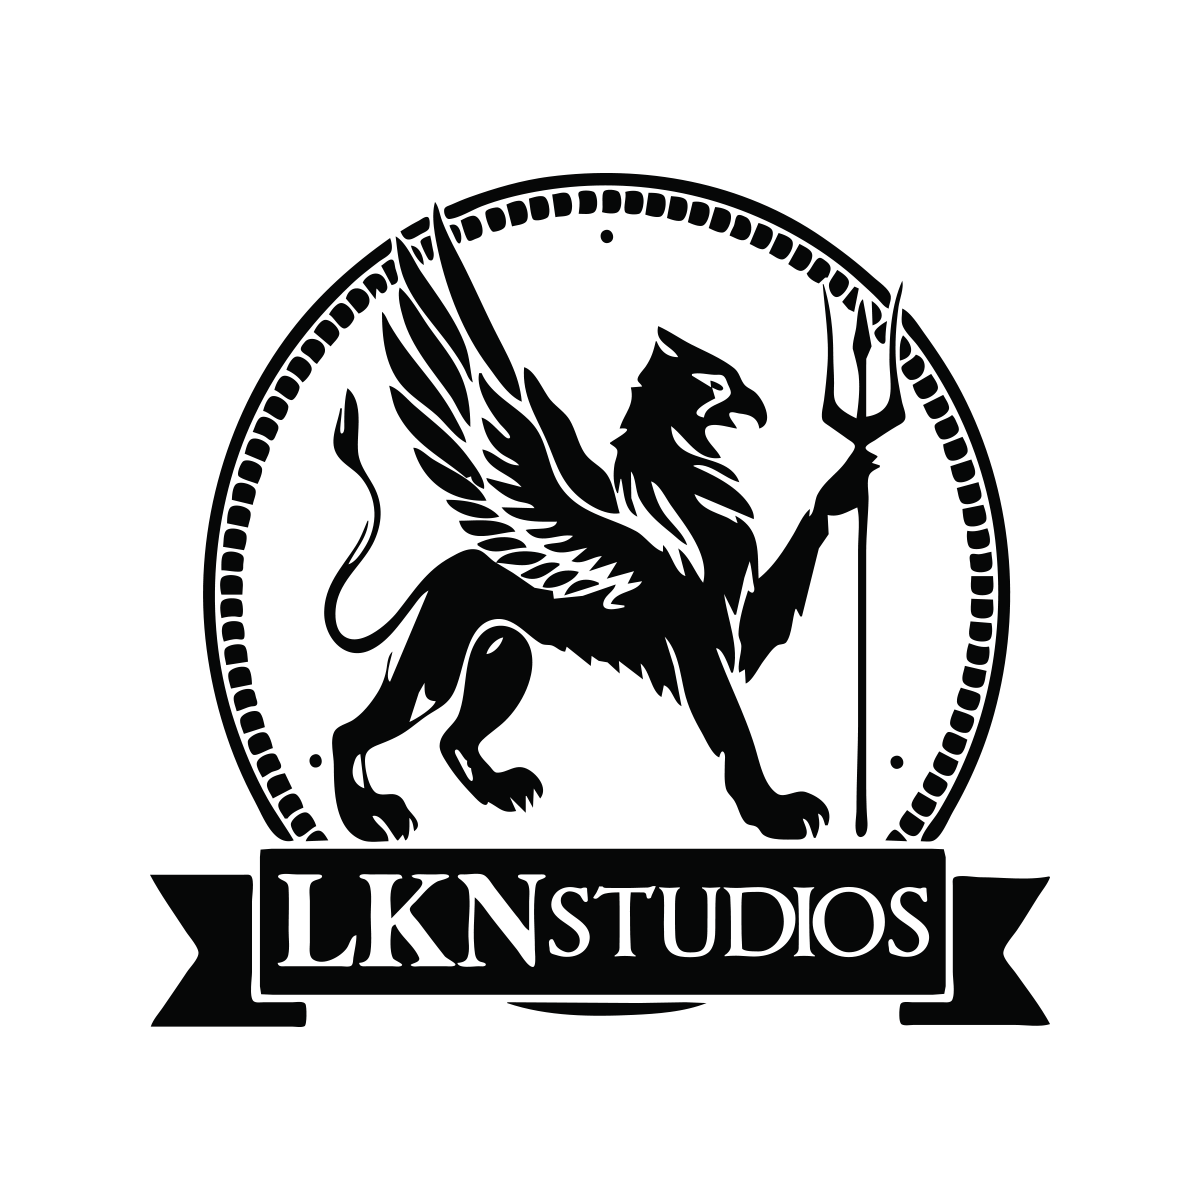 LKN Studios